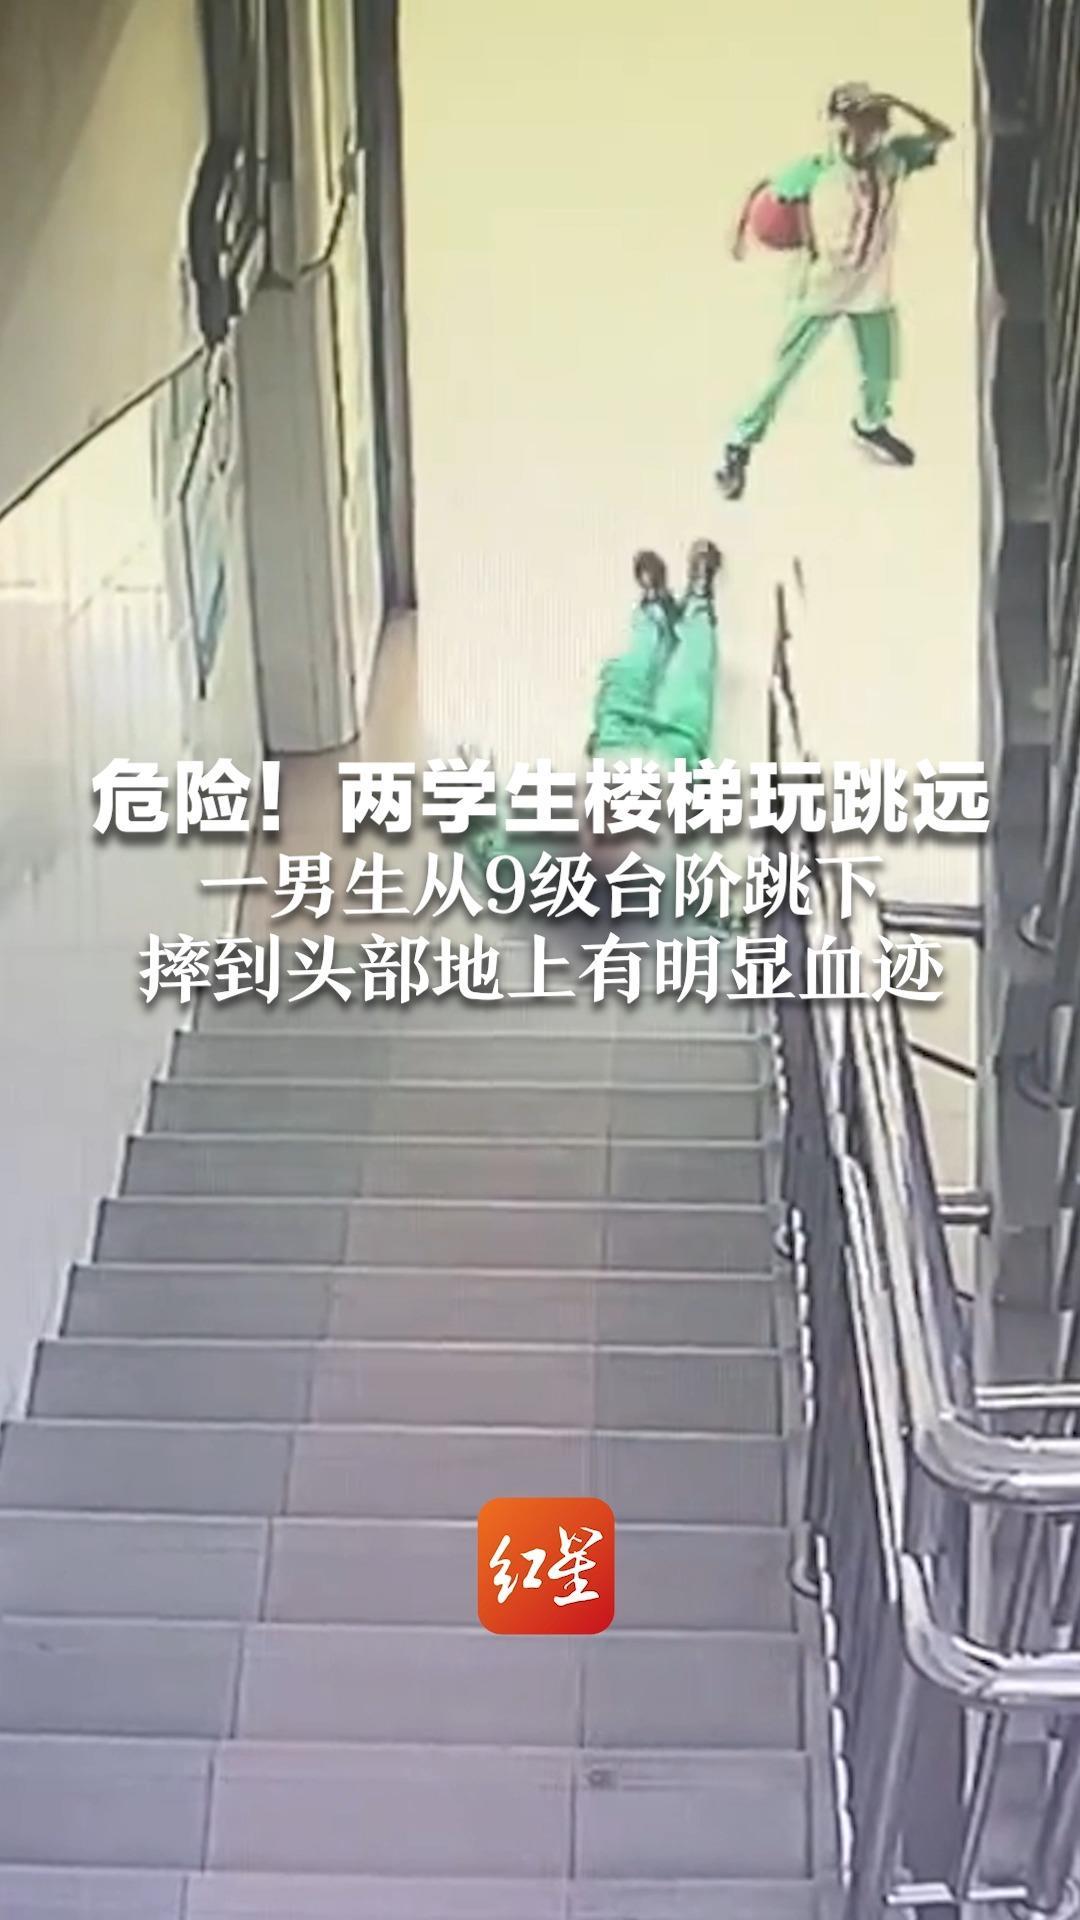 危险！两学生楼梯玩跳远 一男生从9级台阶跳下 摔到头部地上有明显血迹